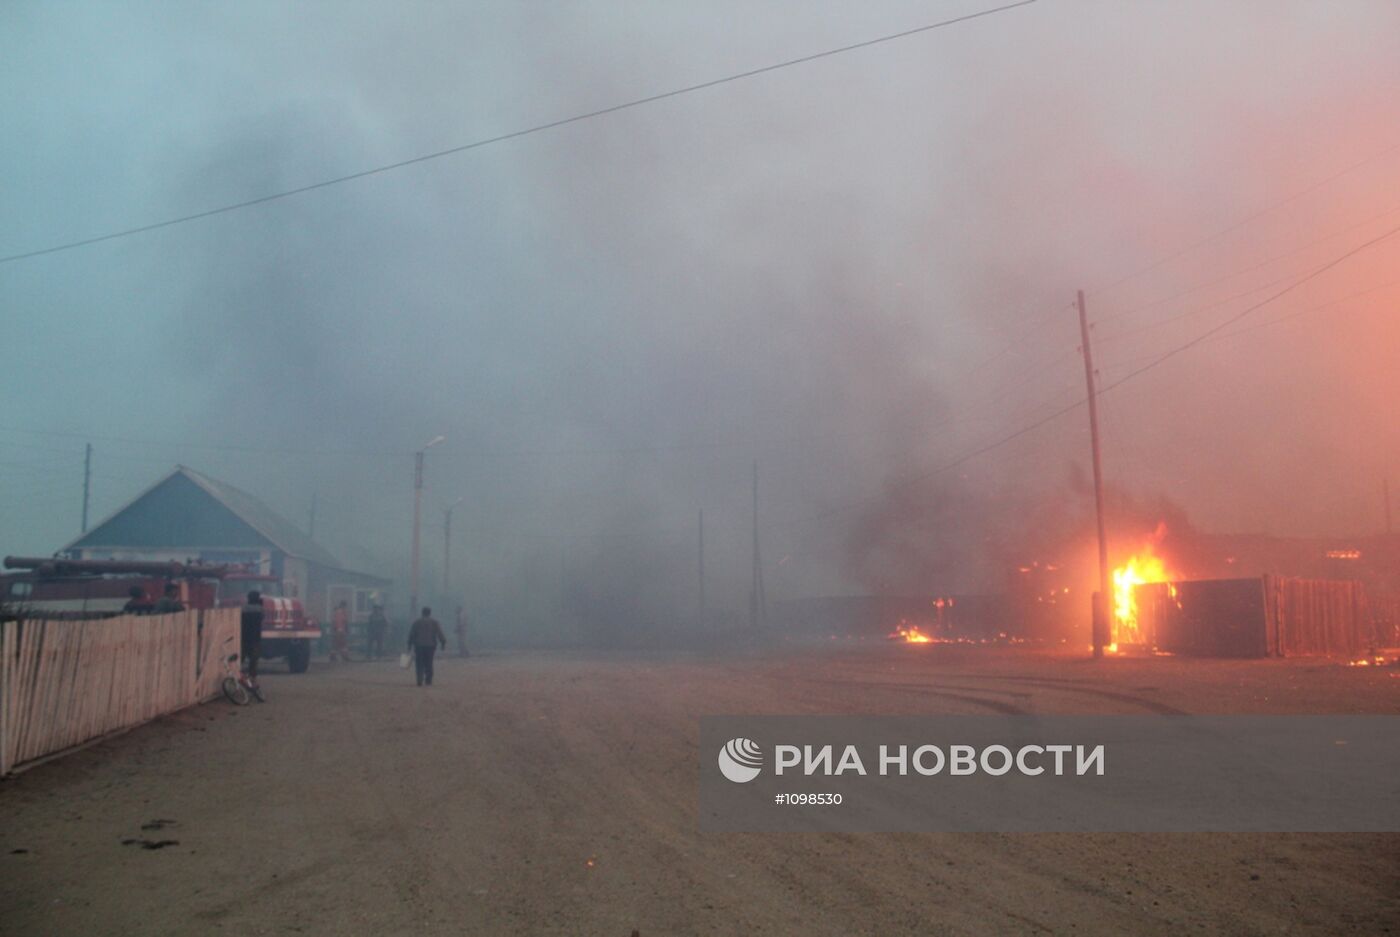 Природные пожары в Ононском районе Забайкальского края